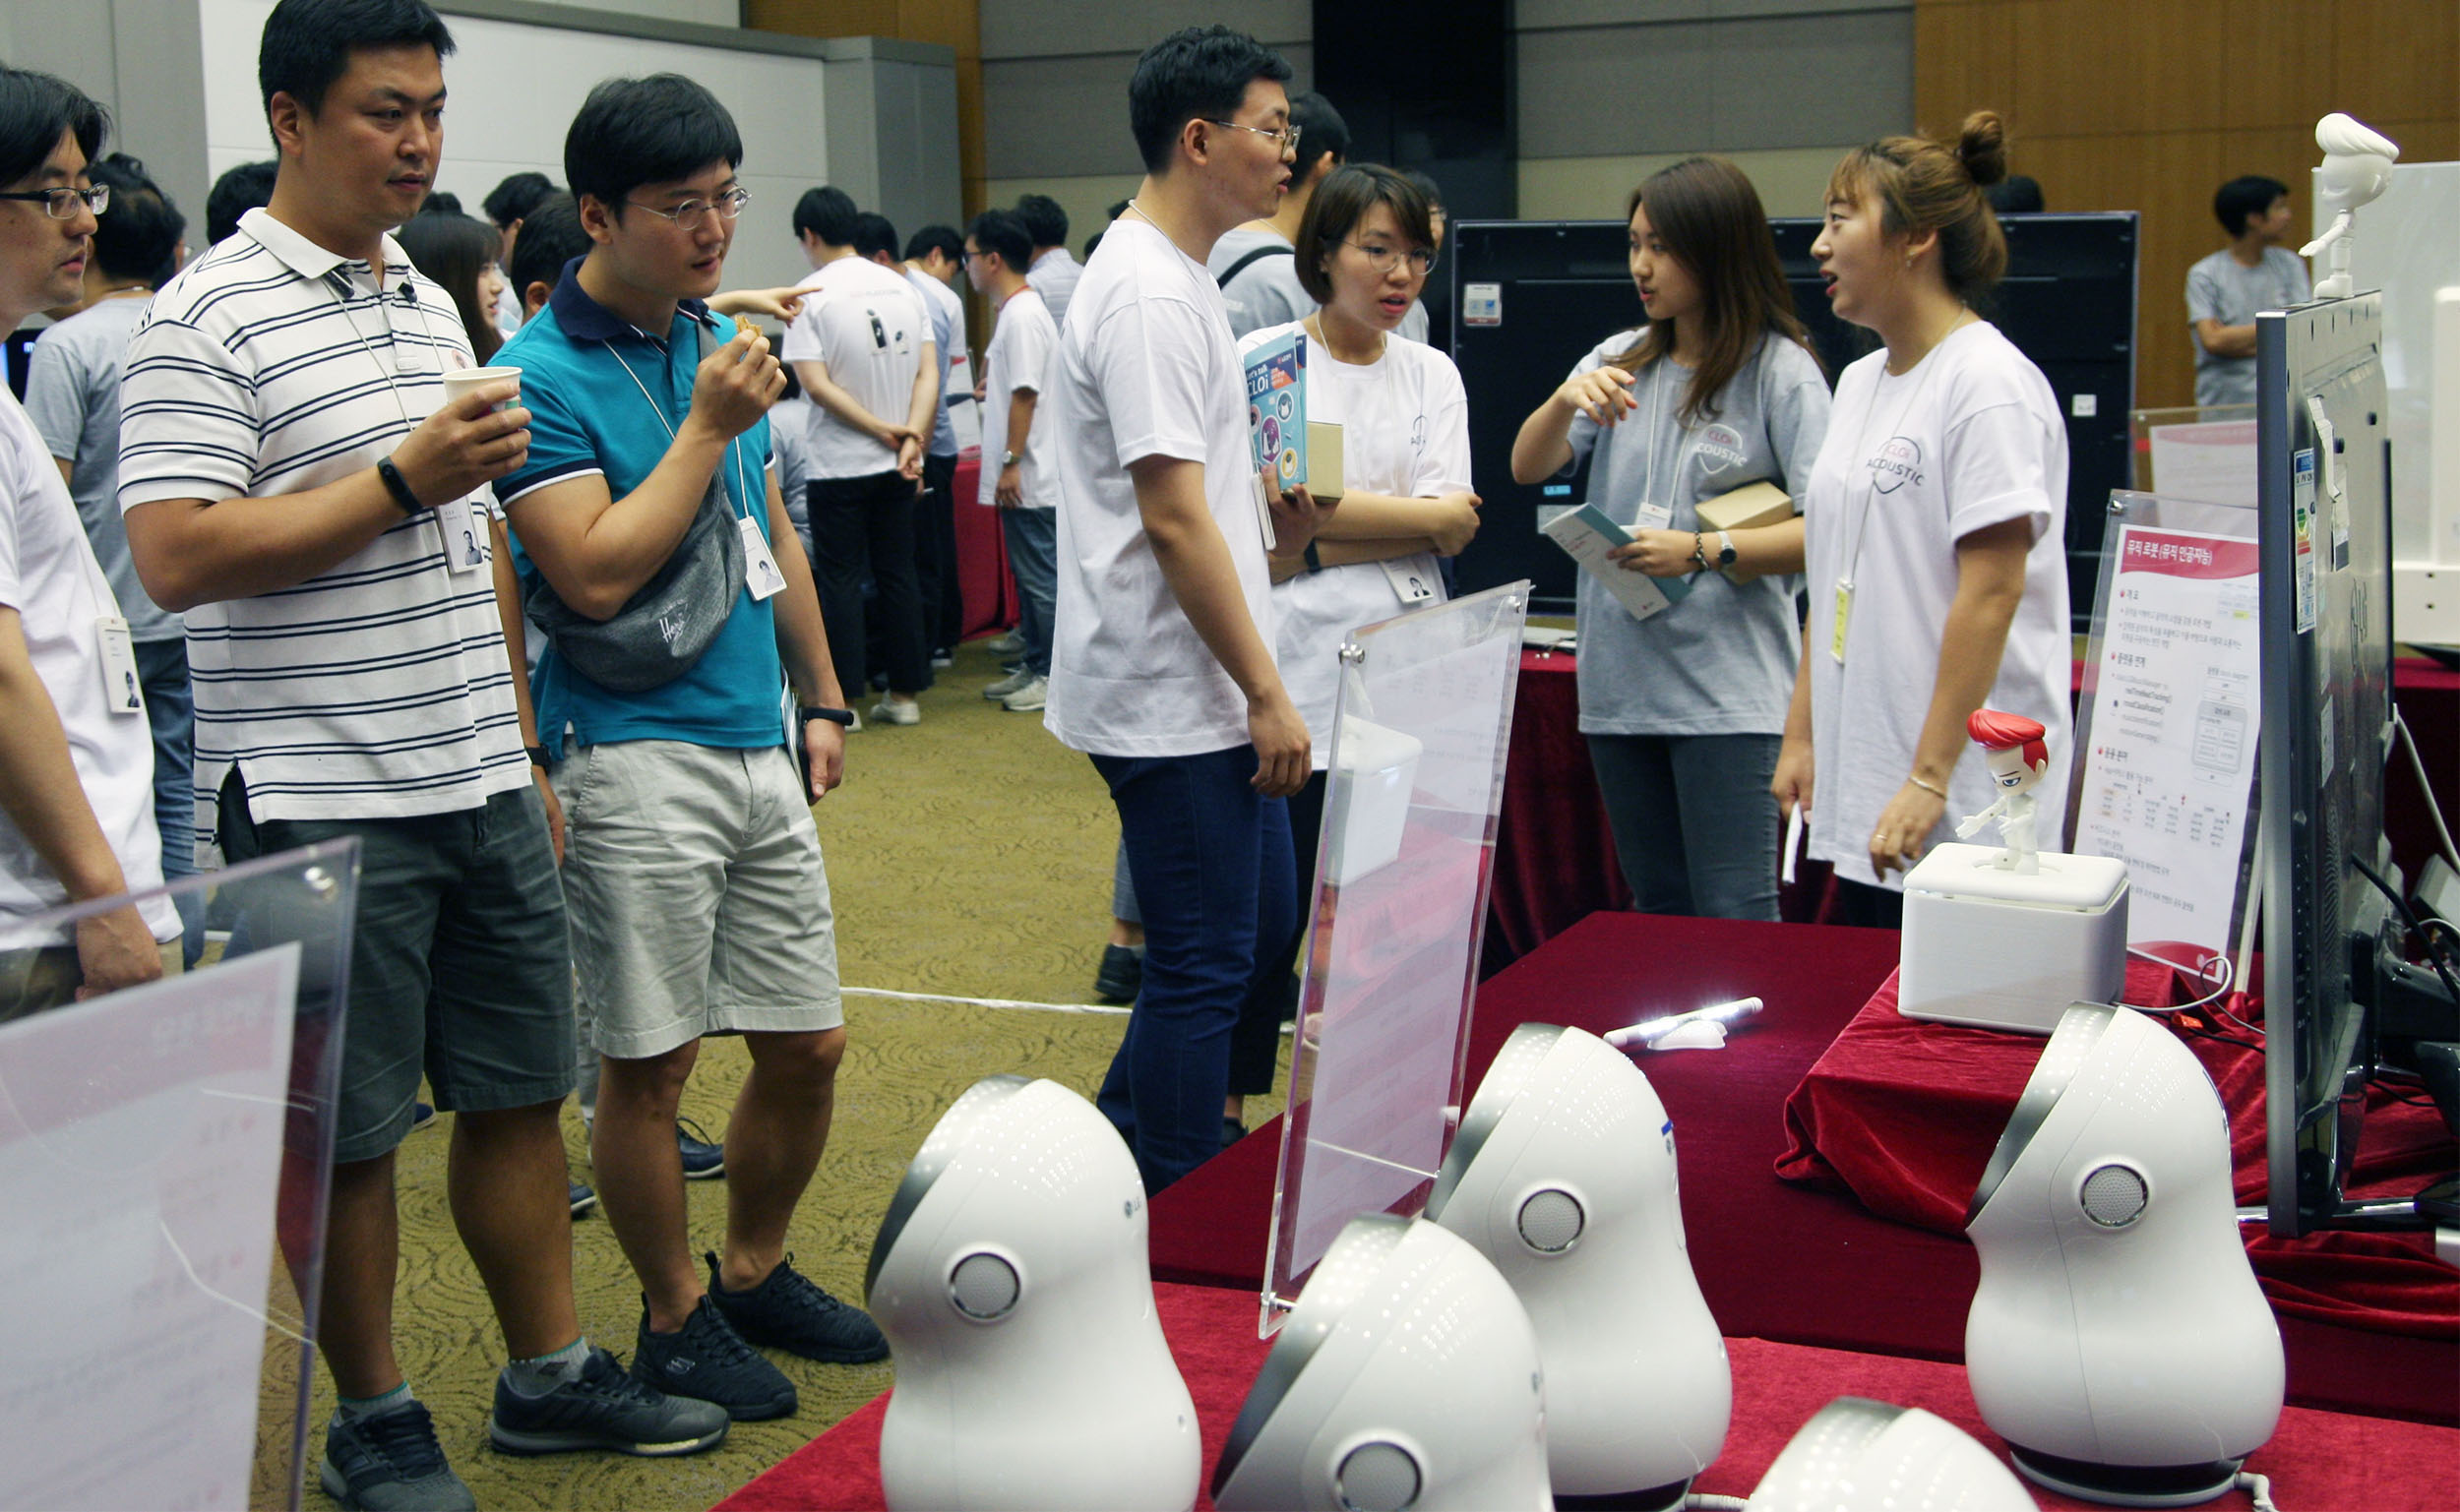 LG전자 사내 로봇 개발자들이 한자리에 모여 관련 지식을 공유하는 자리를 가졌다. 13일 서울 양재동에 위치한 서초R&D캠퍼스에서 ‘2018 클로이(CLOi) 플랫폼 개발자의 날’ 행사에서 개발자들이 로봇 샘플 시연을 지켜보고 있다. 